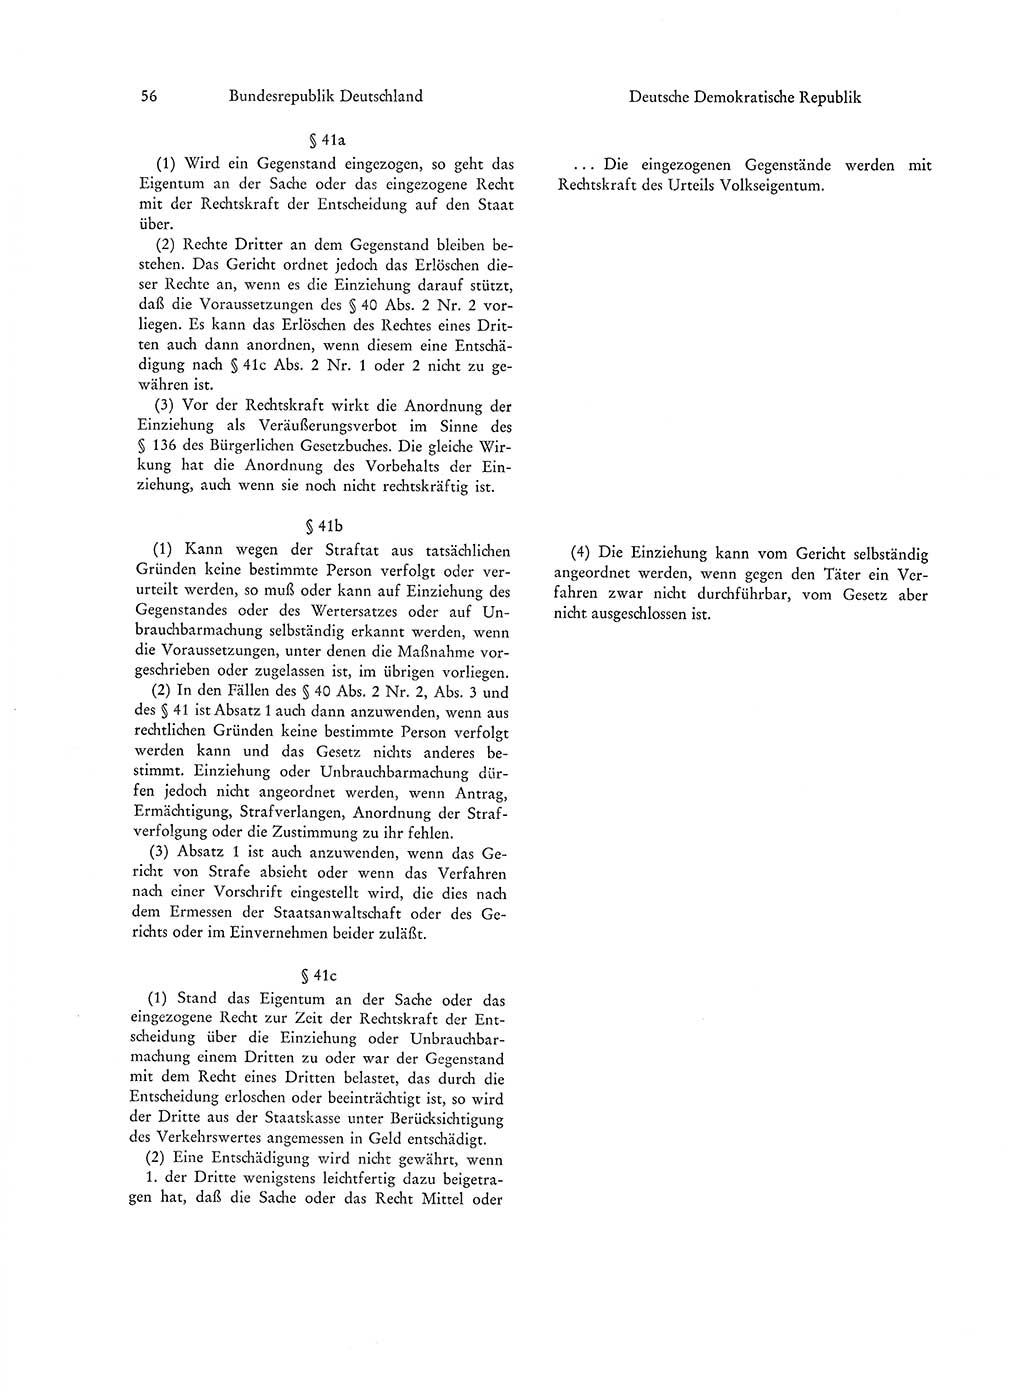 Strafgesetzgebung in Deutschland [Bundesrepublik Deutschland (BRD) und Deutsche Demokratische Republik (DDR)] 1972, Seite 56 (Str.-Ges. Dtl. StGB BRD DDR 1972, S. 56)